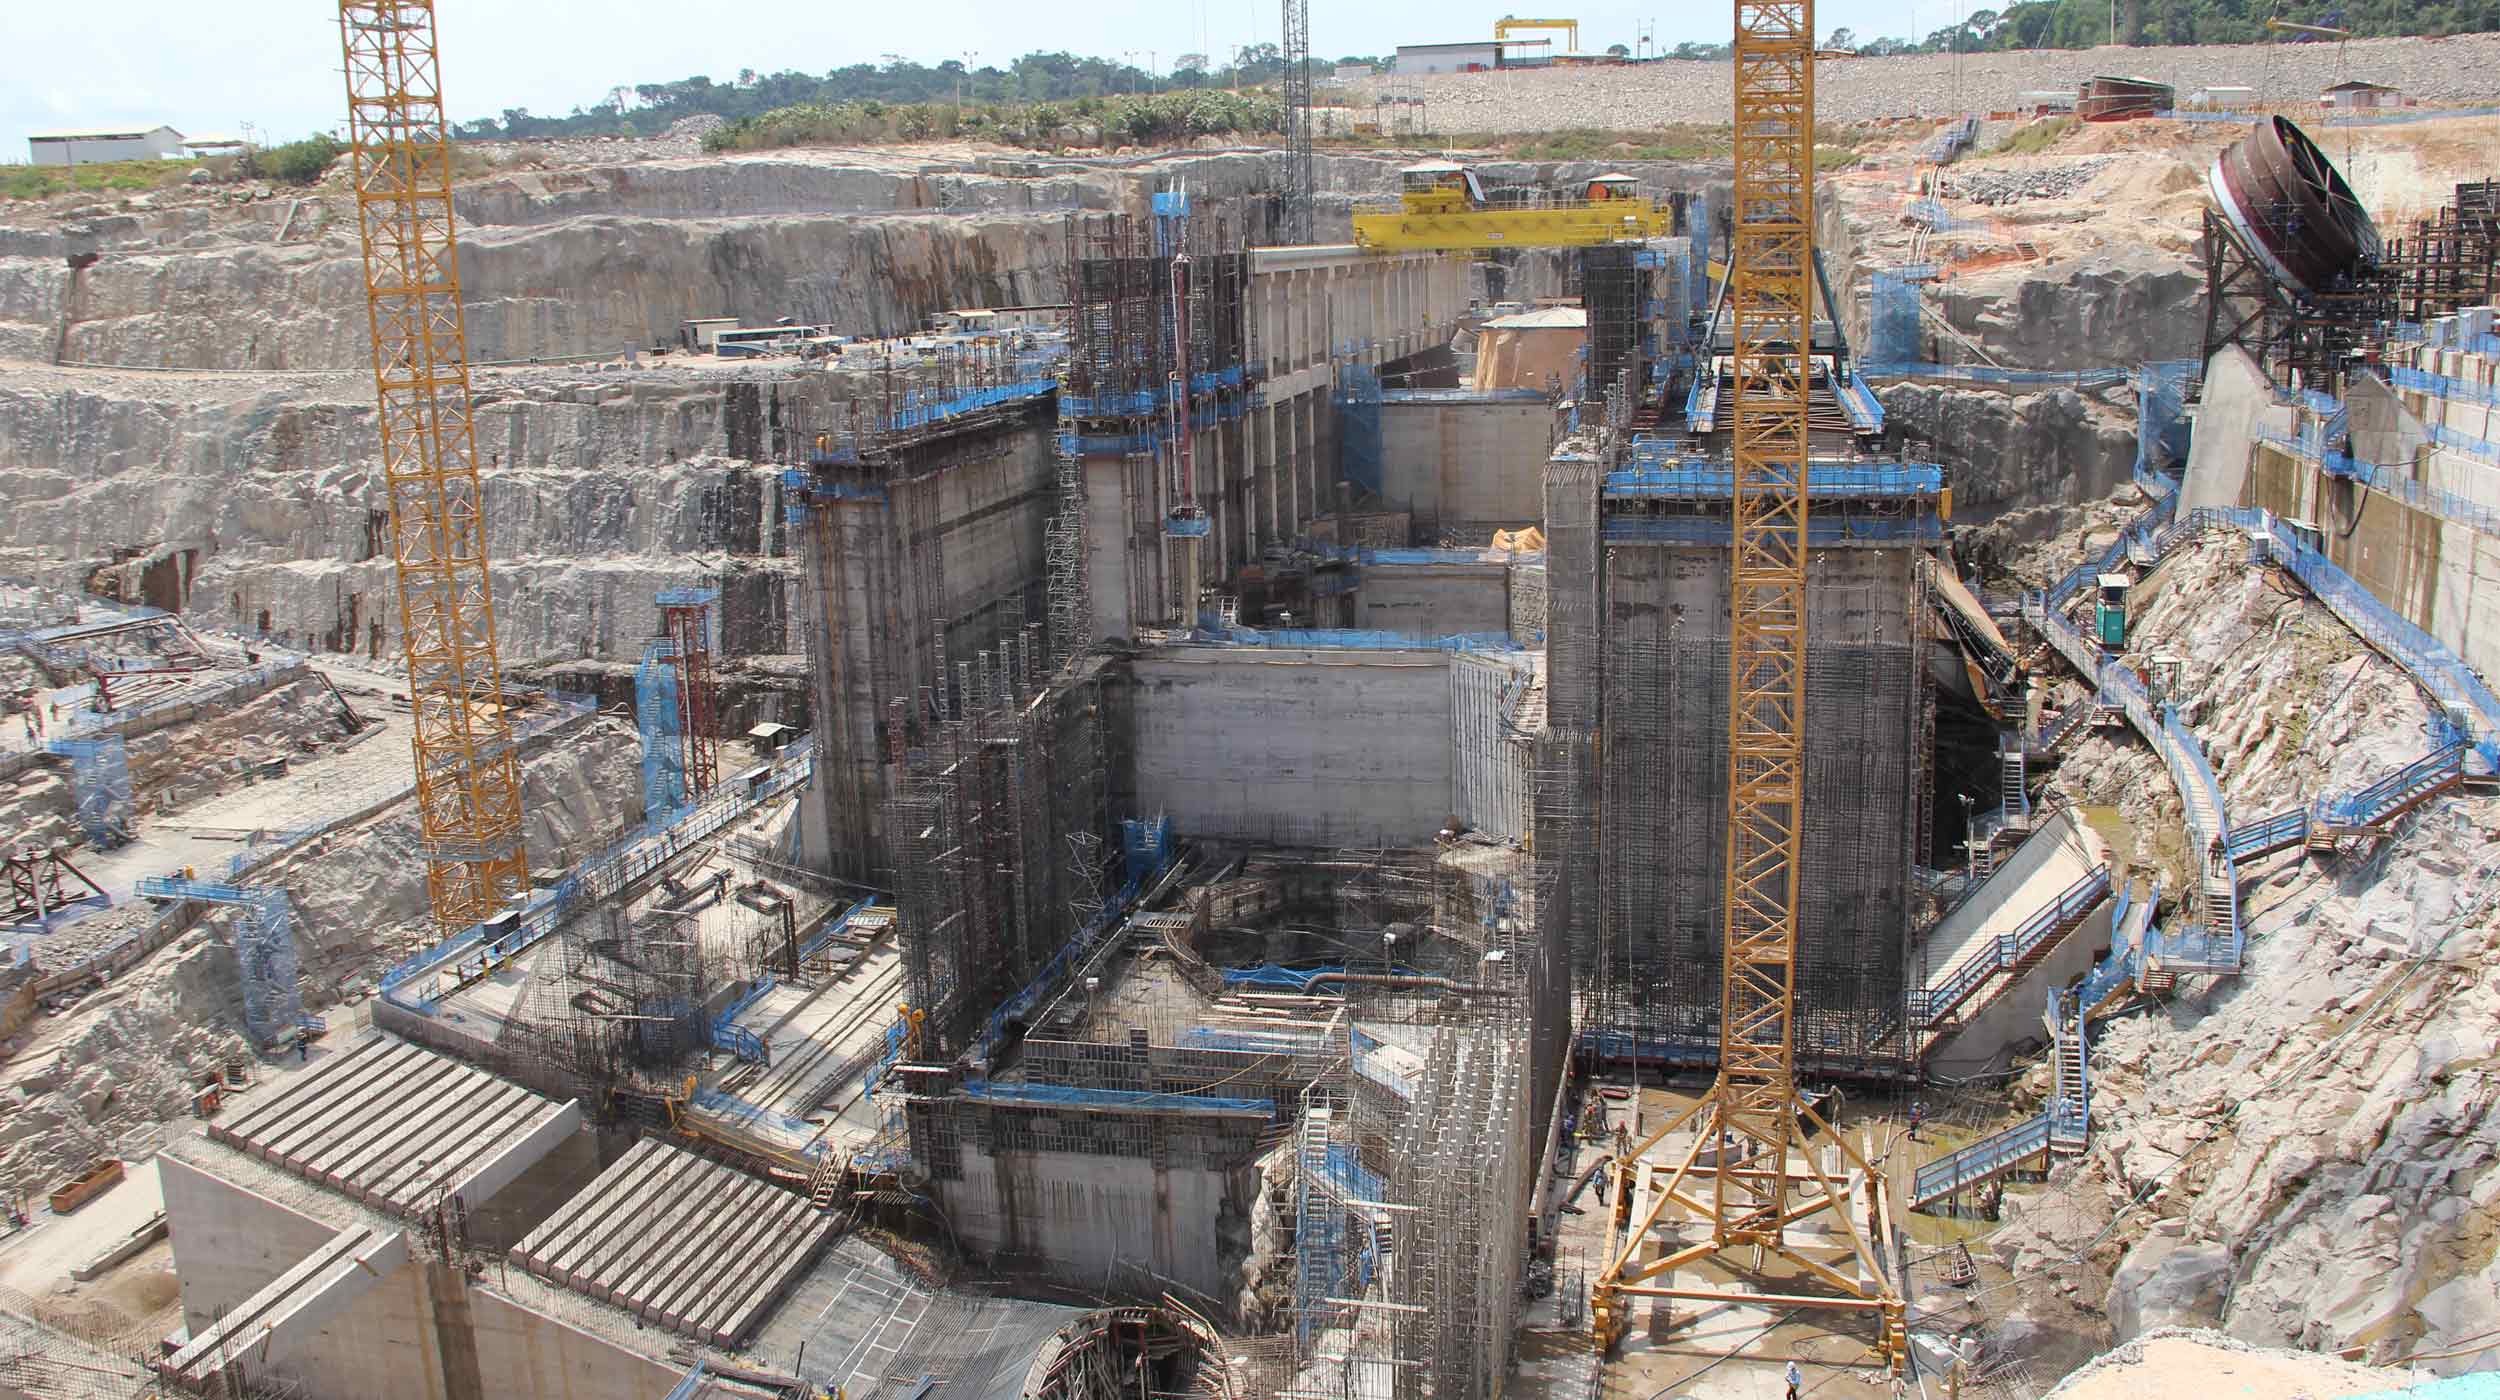 Elektrownia wodna Teles Pires jest inwestycją, która wpisuje się w rządowy program przyspieszenia wzrostu gospodarczego (PAC) w Brazylii.